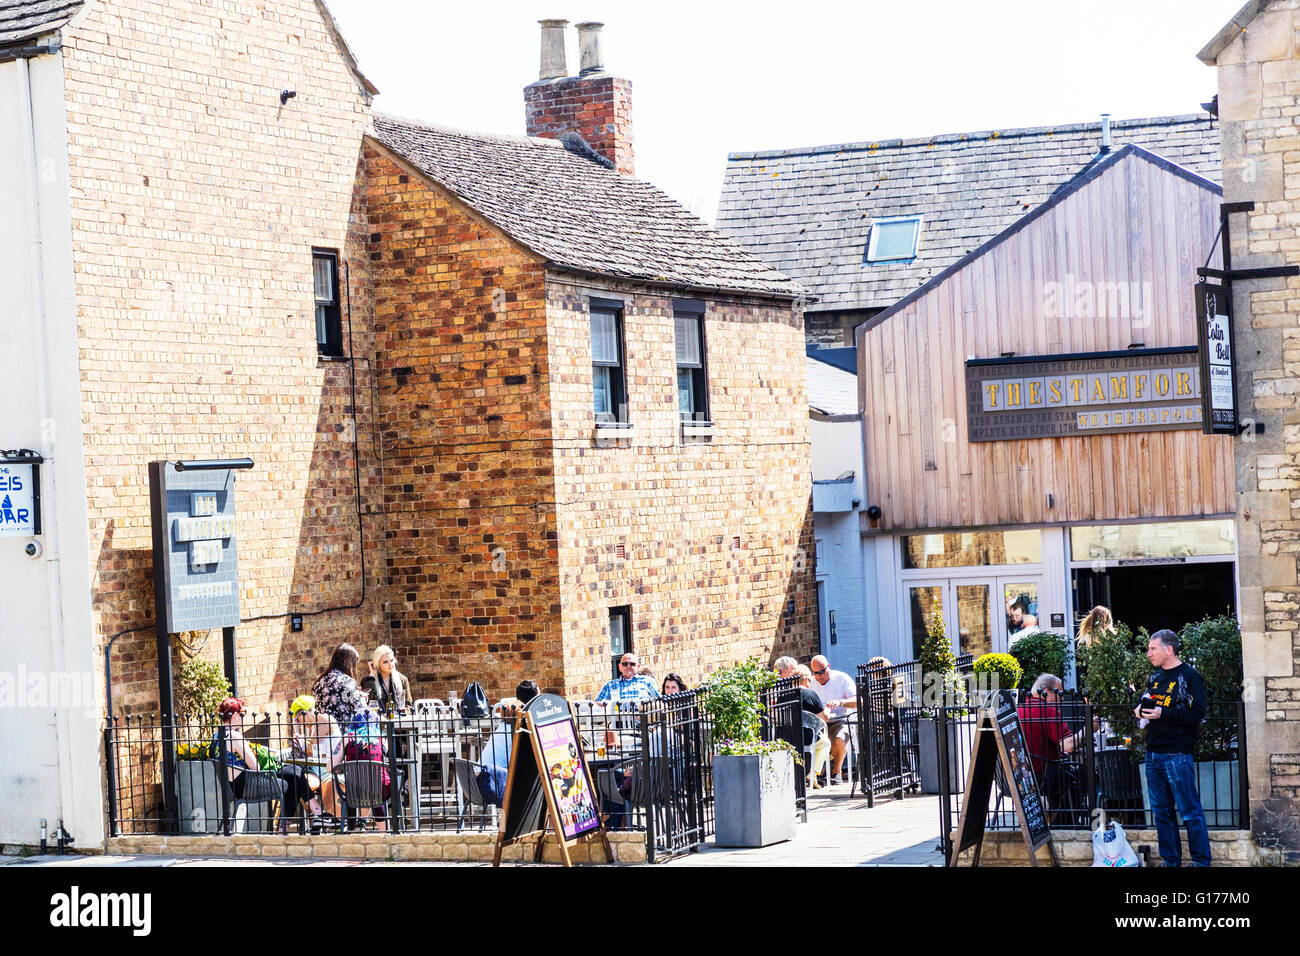 Biertrinker Garten genießen Sonne Sonne und trinken außerhalb al Fresco Getränke Wortspiel Alkohol UK England englische Städte Stockfoto